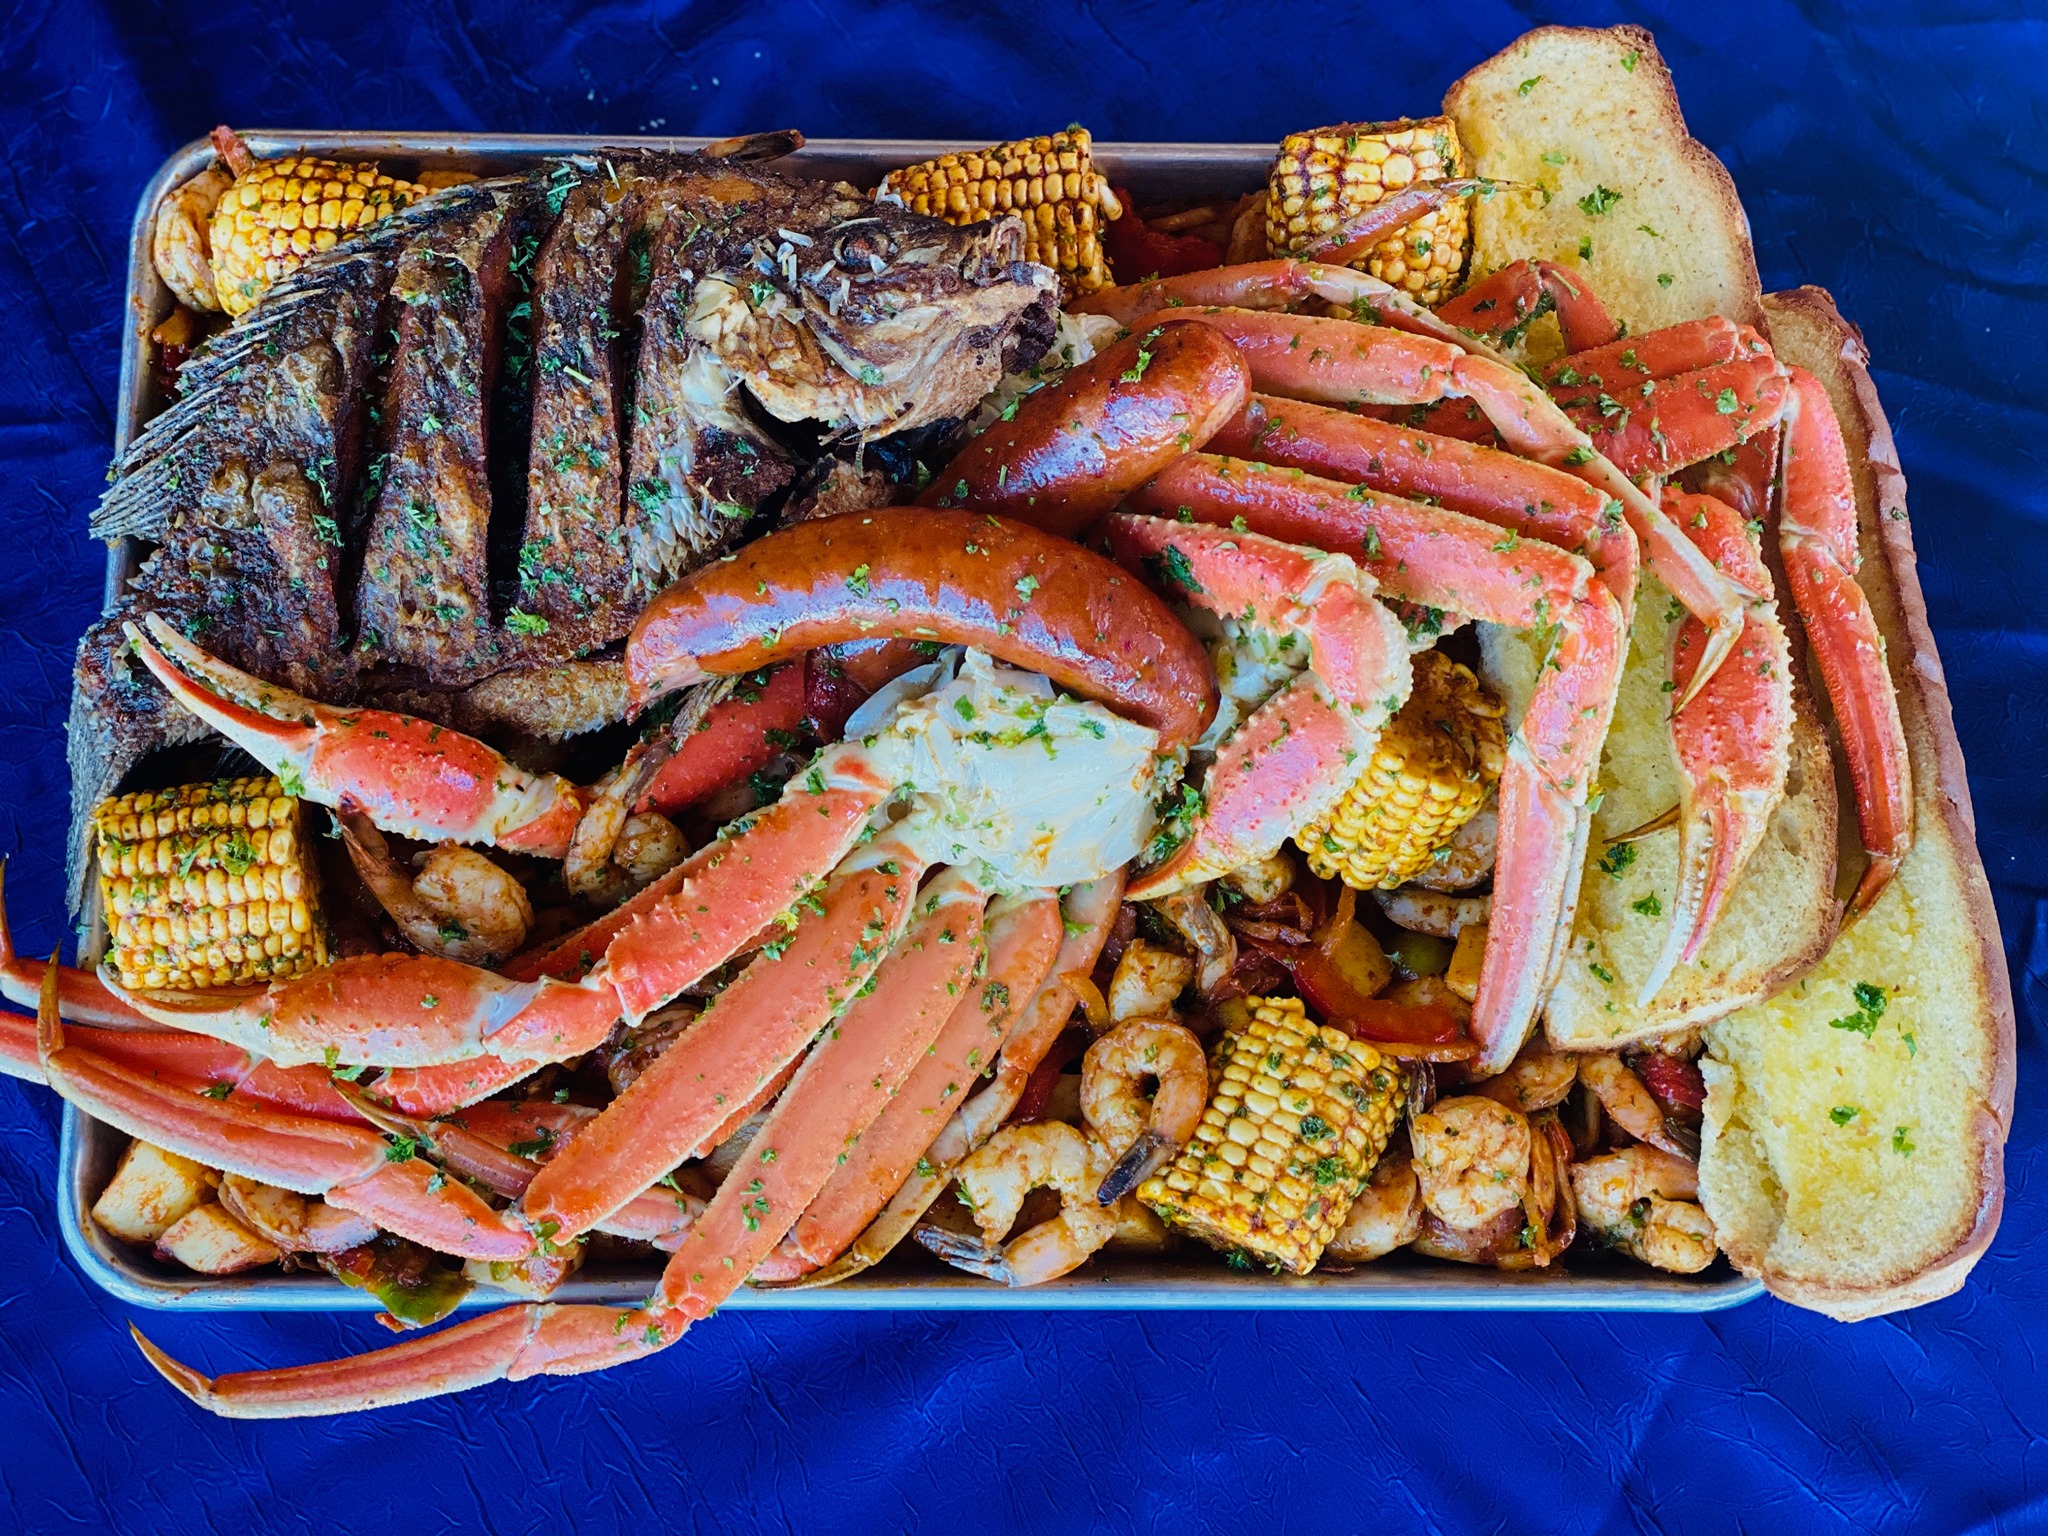 أفضل مطاعم للمأكولات البحرية في كاليفورنيا 2022